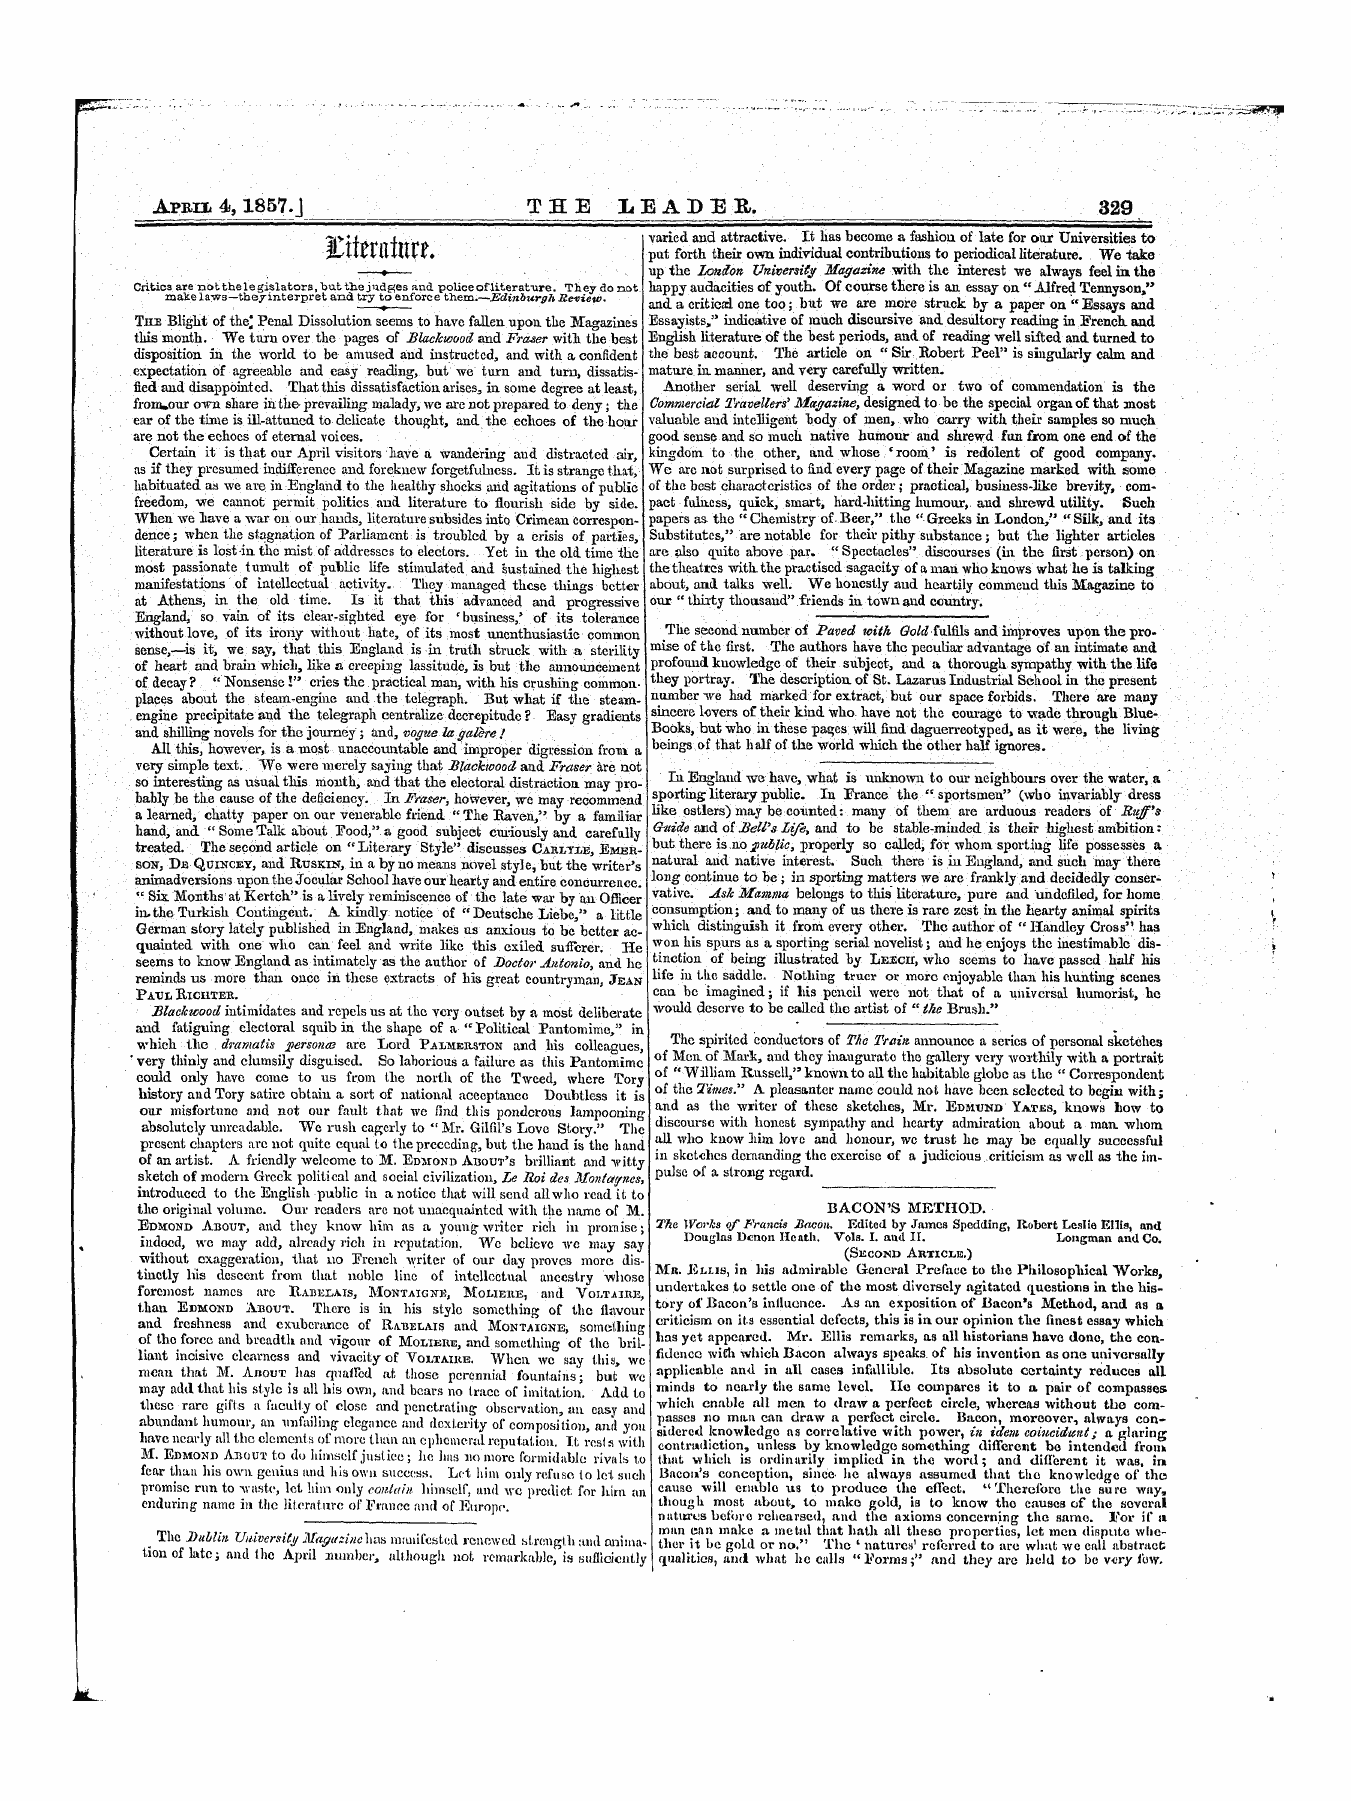 Leader (1850-1860): jS F Y, 1st edition - 3i V Tltvi* 4 Tt*Iv Jluvriuurf*